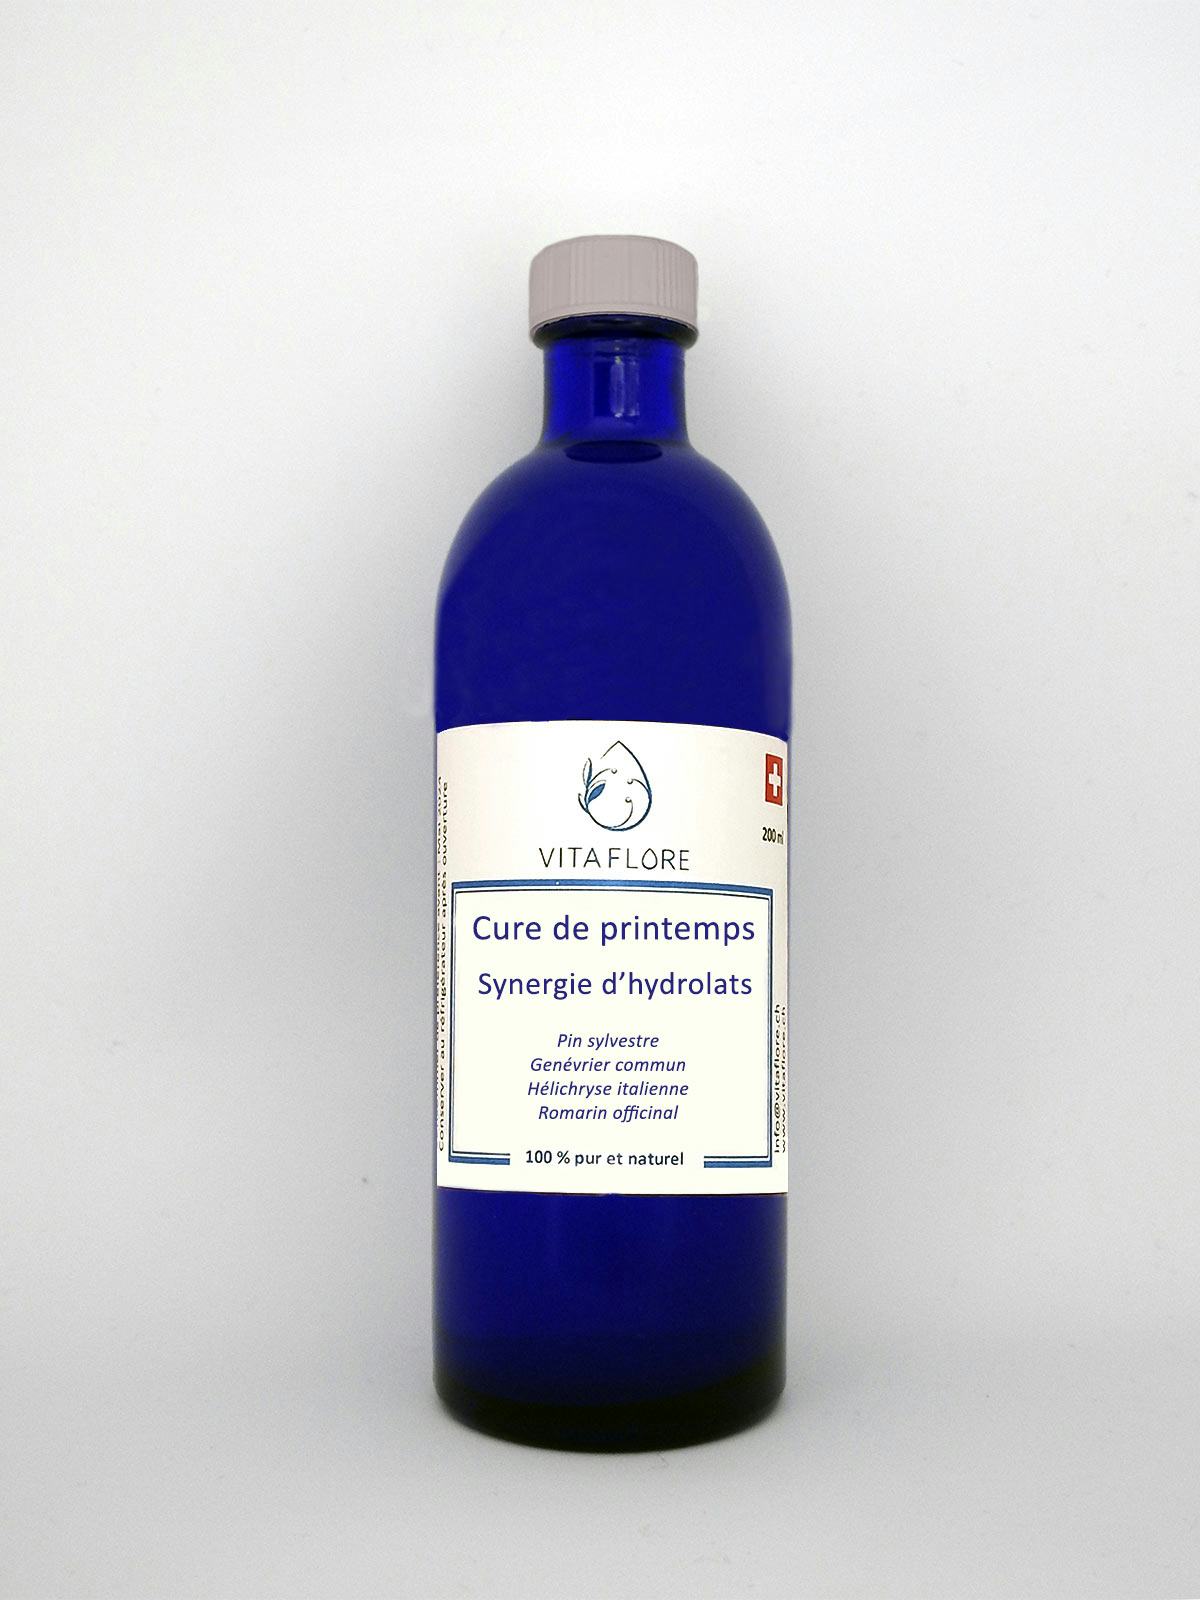 Synergie d’hydrolats – Cure de printemps, prodotto artigianale per la vendita diretta in Svizzera